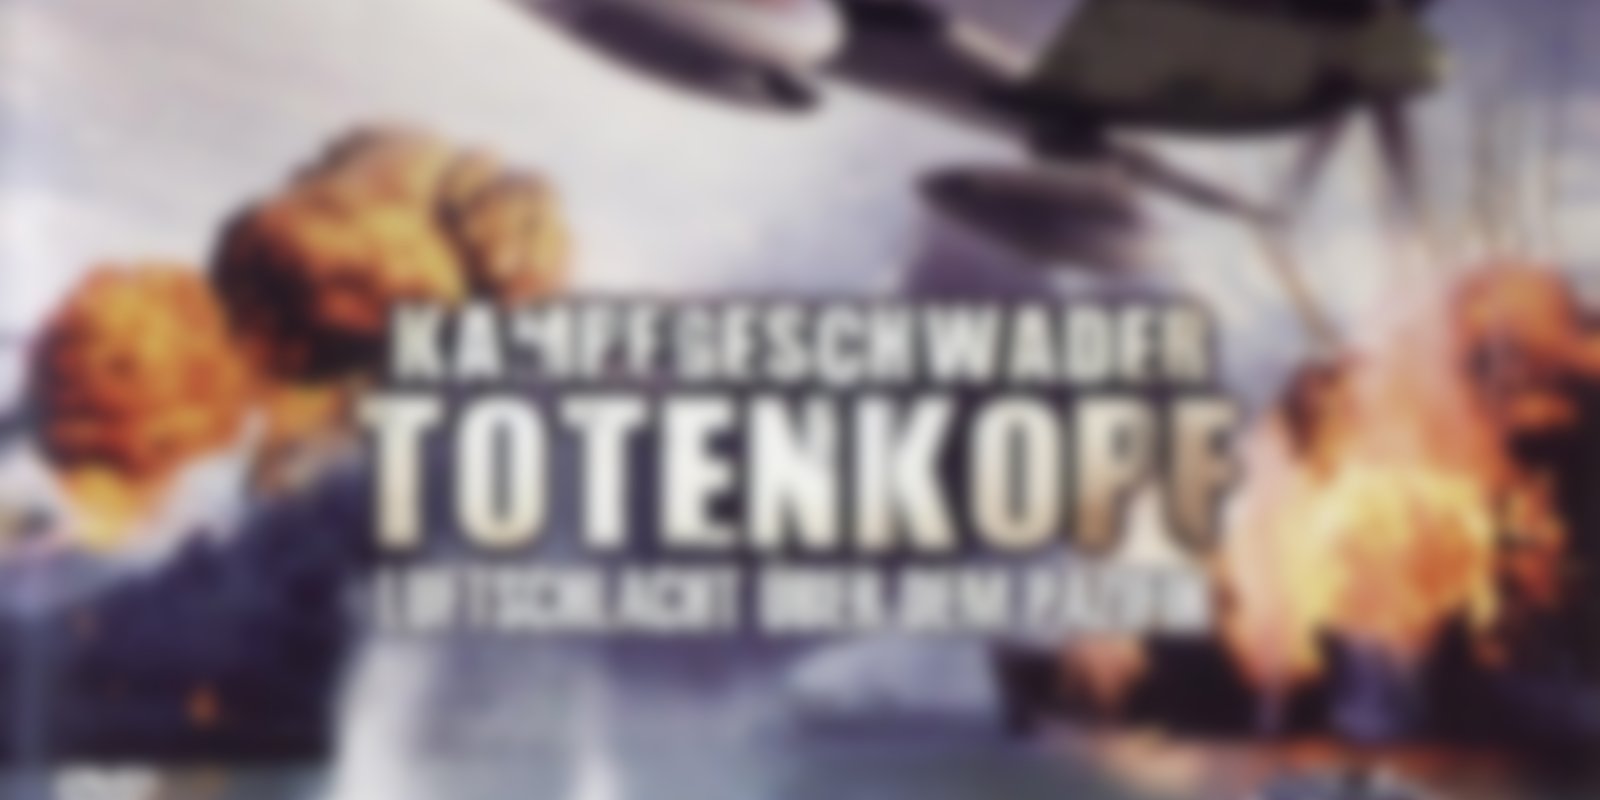 Kampfgeschwader Totenkopf - Sturzflug in die Hölle